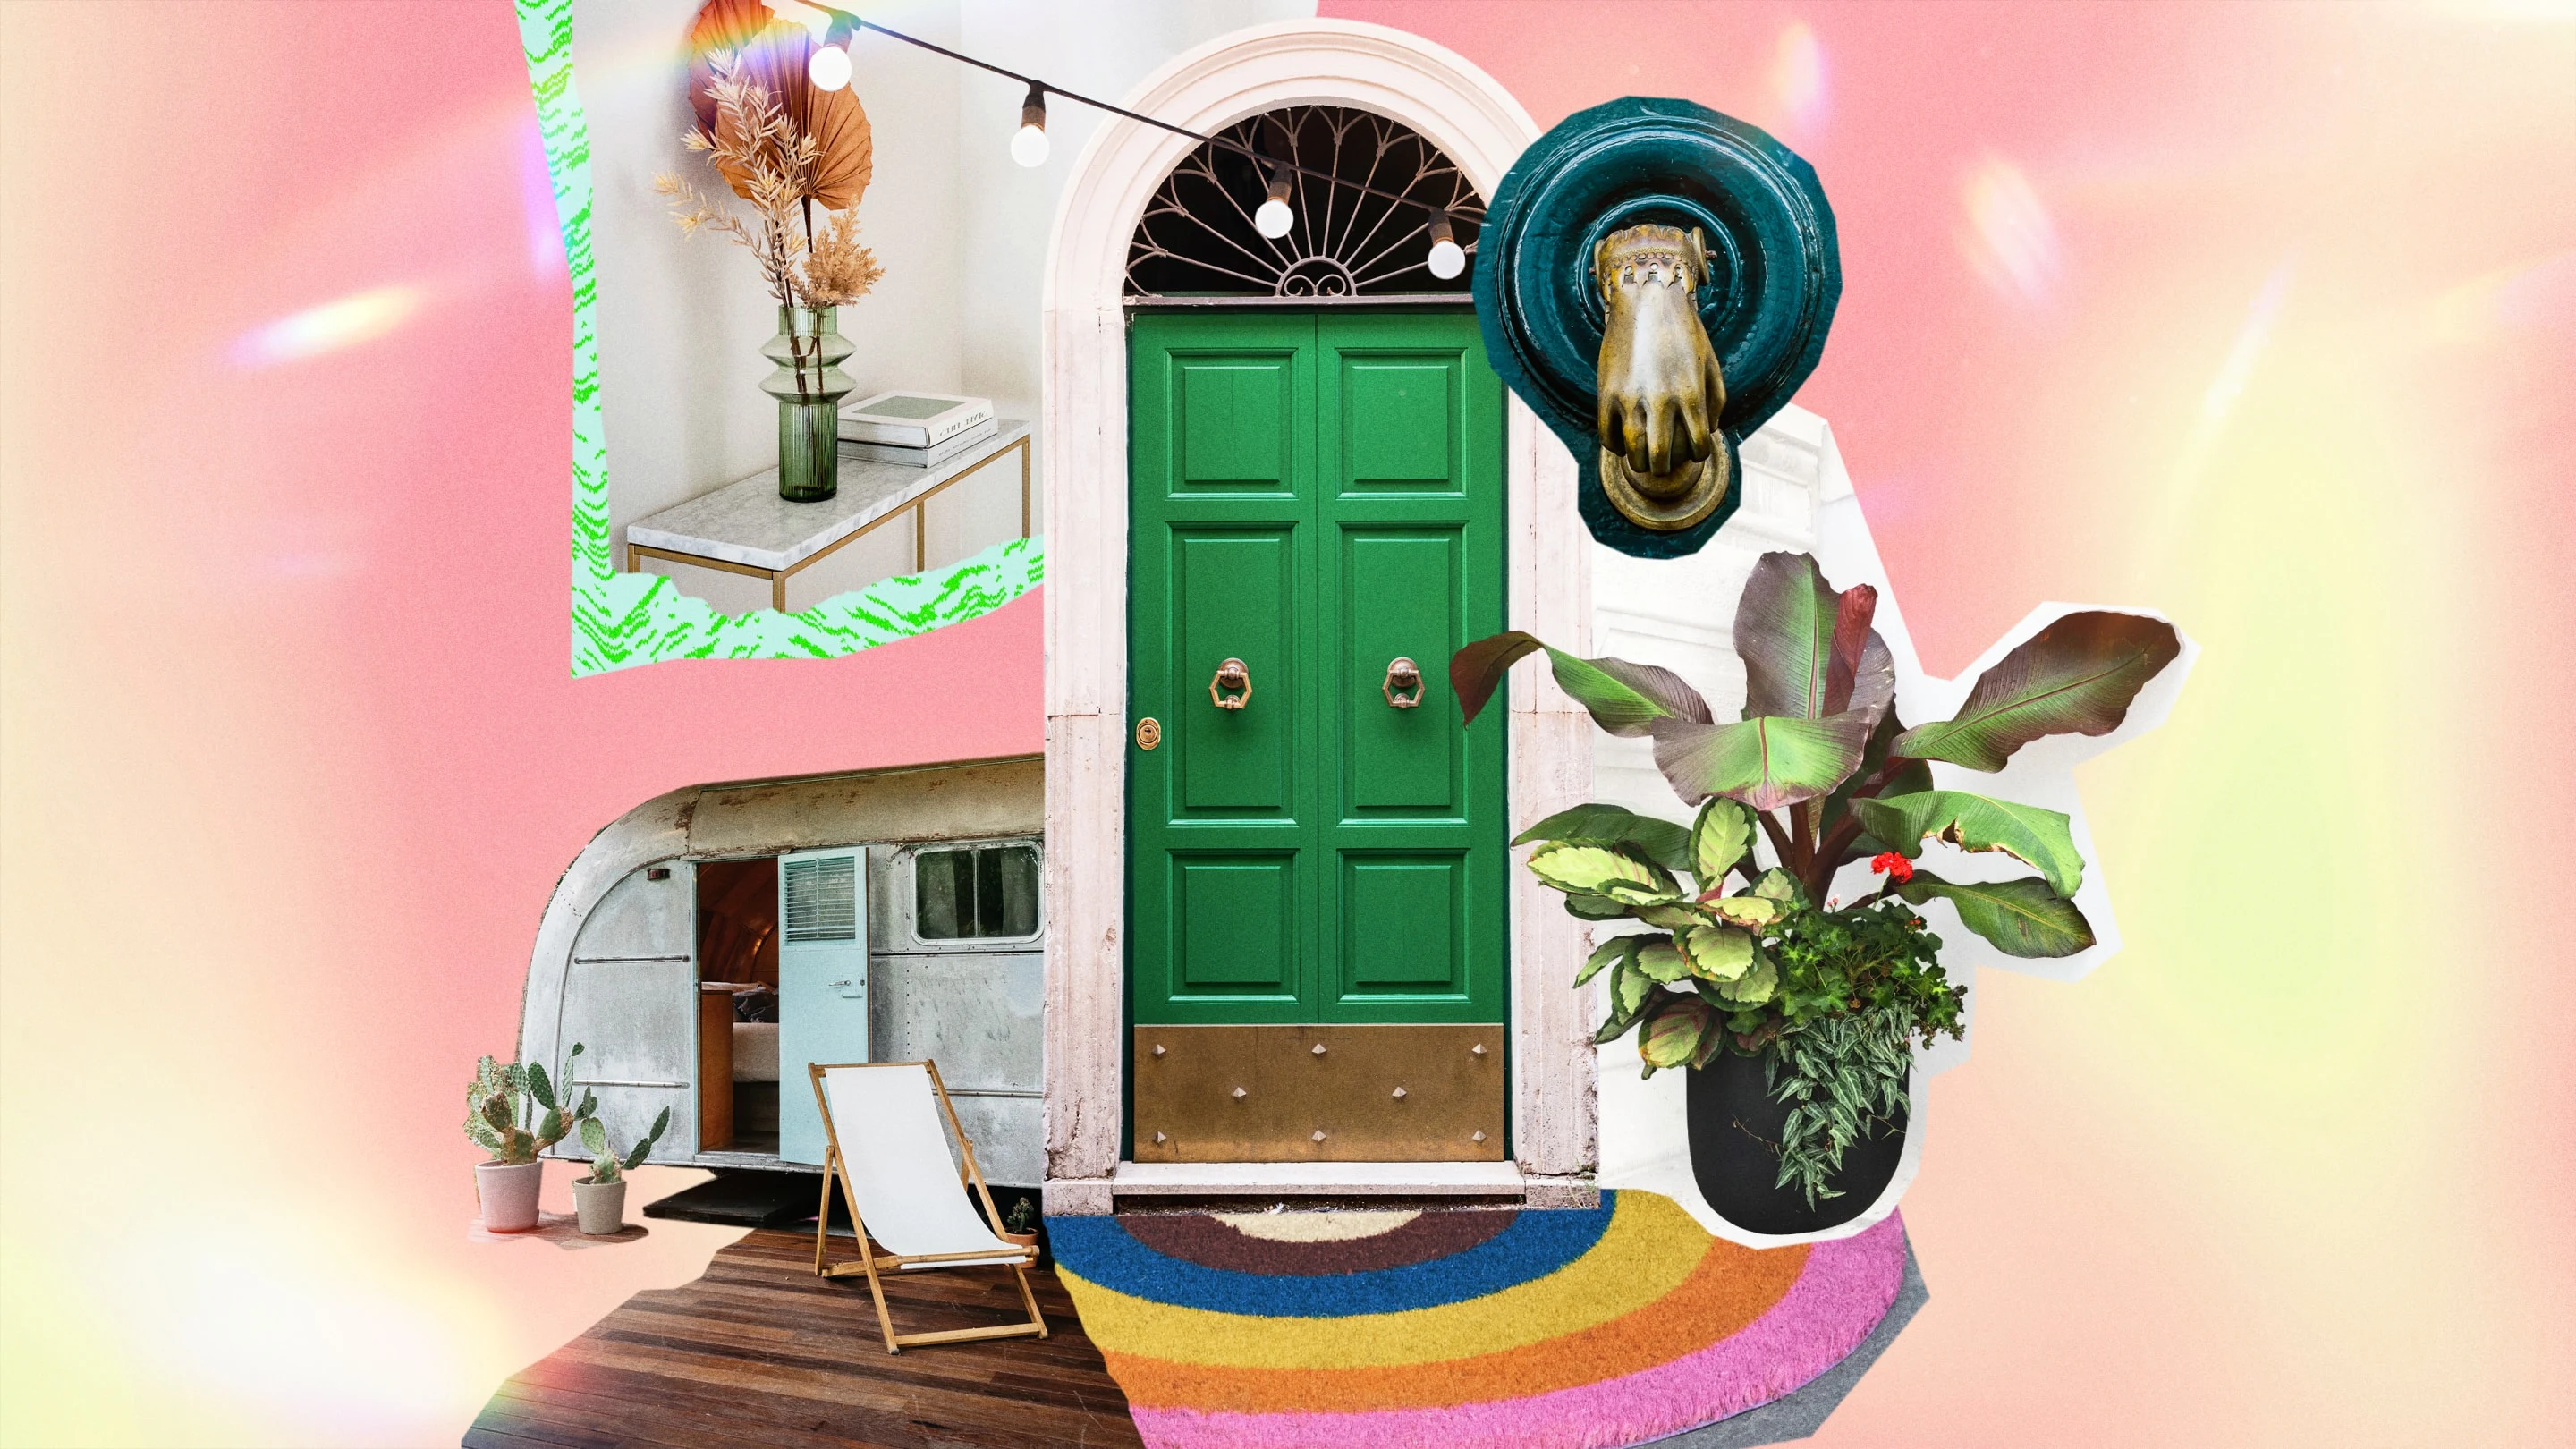 Collage di immagini eclettiche raffiguranti una porta verde circondata da una grande pianta, uno zerbino dai colori accesi, un tavolino per l'ingresso di casa e un camper.